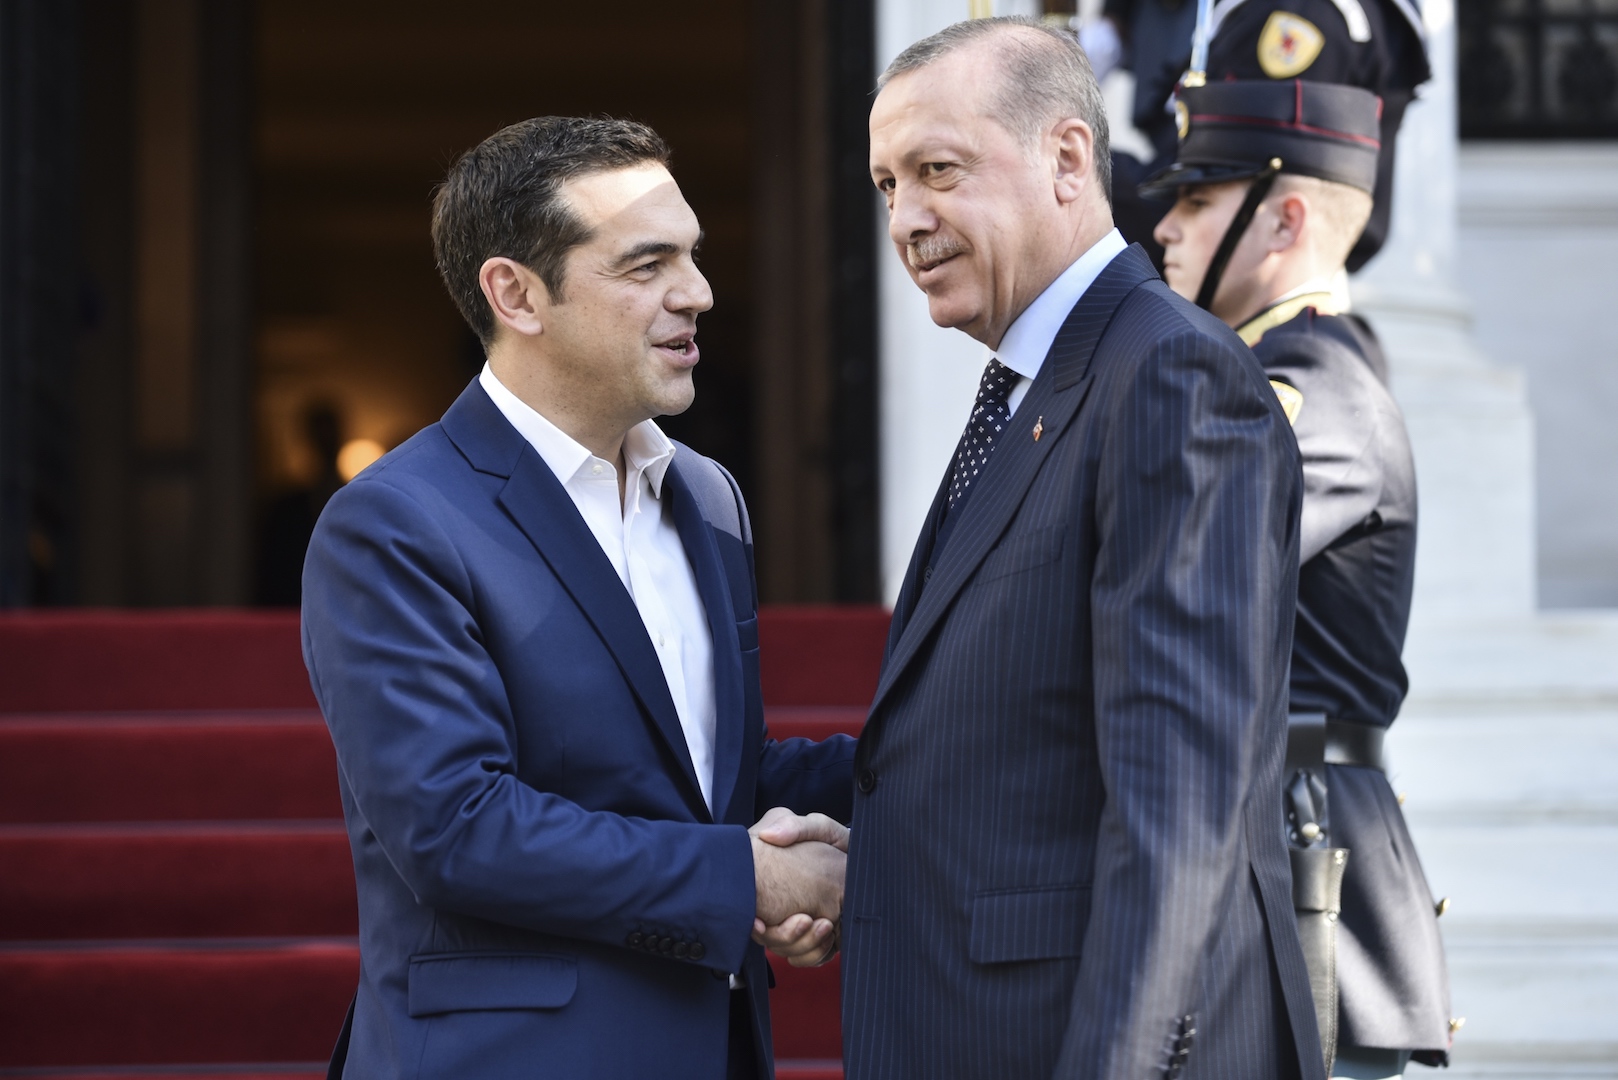 Ο Θανάσης Κ. Εξηγεί πως ο Αλέξης Τσίπρας έκανε δώρο στον Ταγίπ Ερντογάν την φιλανδοποίηση της Ελλάδας. Και αυτό σε μια περίοδο που η Τουρκία επέλεξε να απομακρυνθεί από την Δύση σπάζονται το γεωπολιτικό δίδυμο που είχε δημιουργήσει με την Ελλάδα, στον Ψυχρό Πόλεμο. new deal